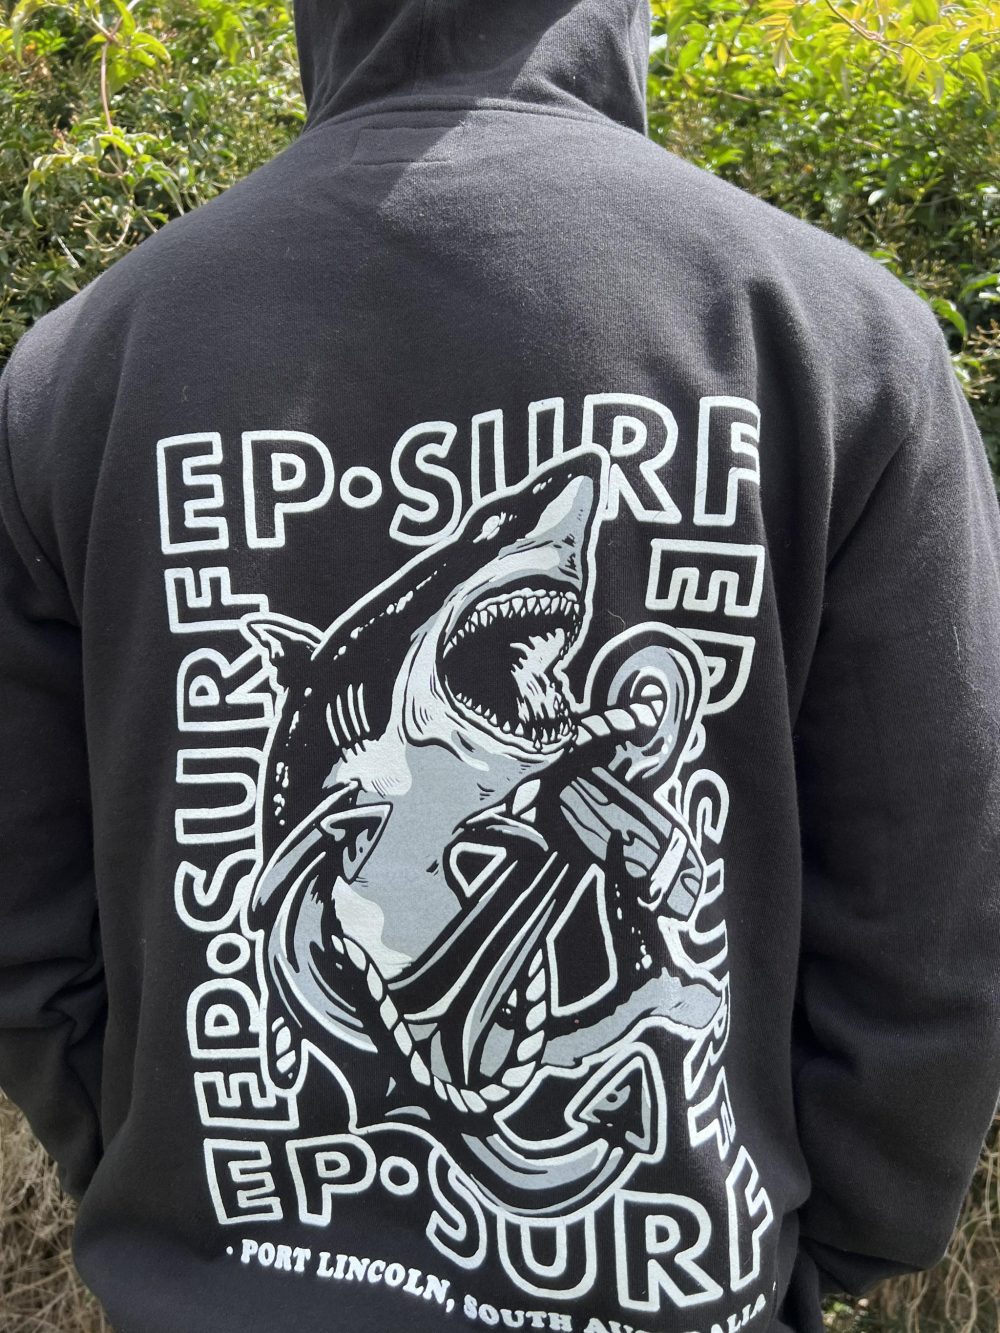 EPHUBSHARK Black/white Ep Surf Ep Hoody U Biffy Shark Unisex Jumpers & Crews Clothing Clothing